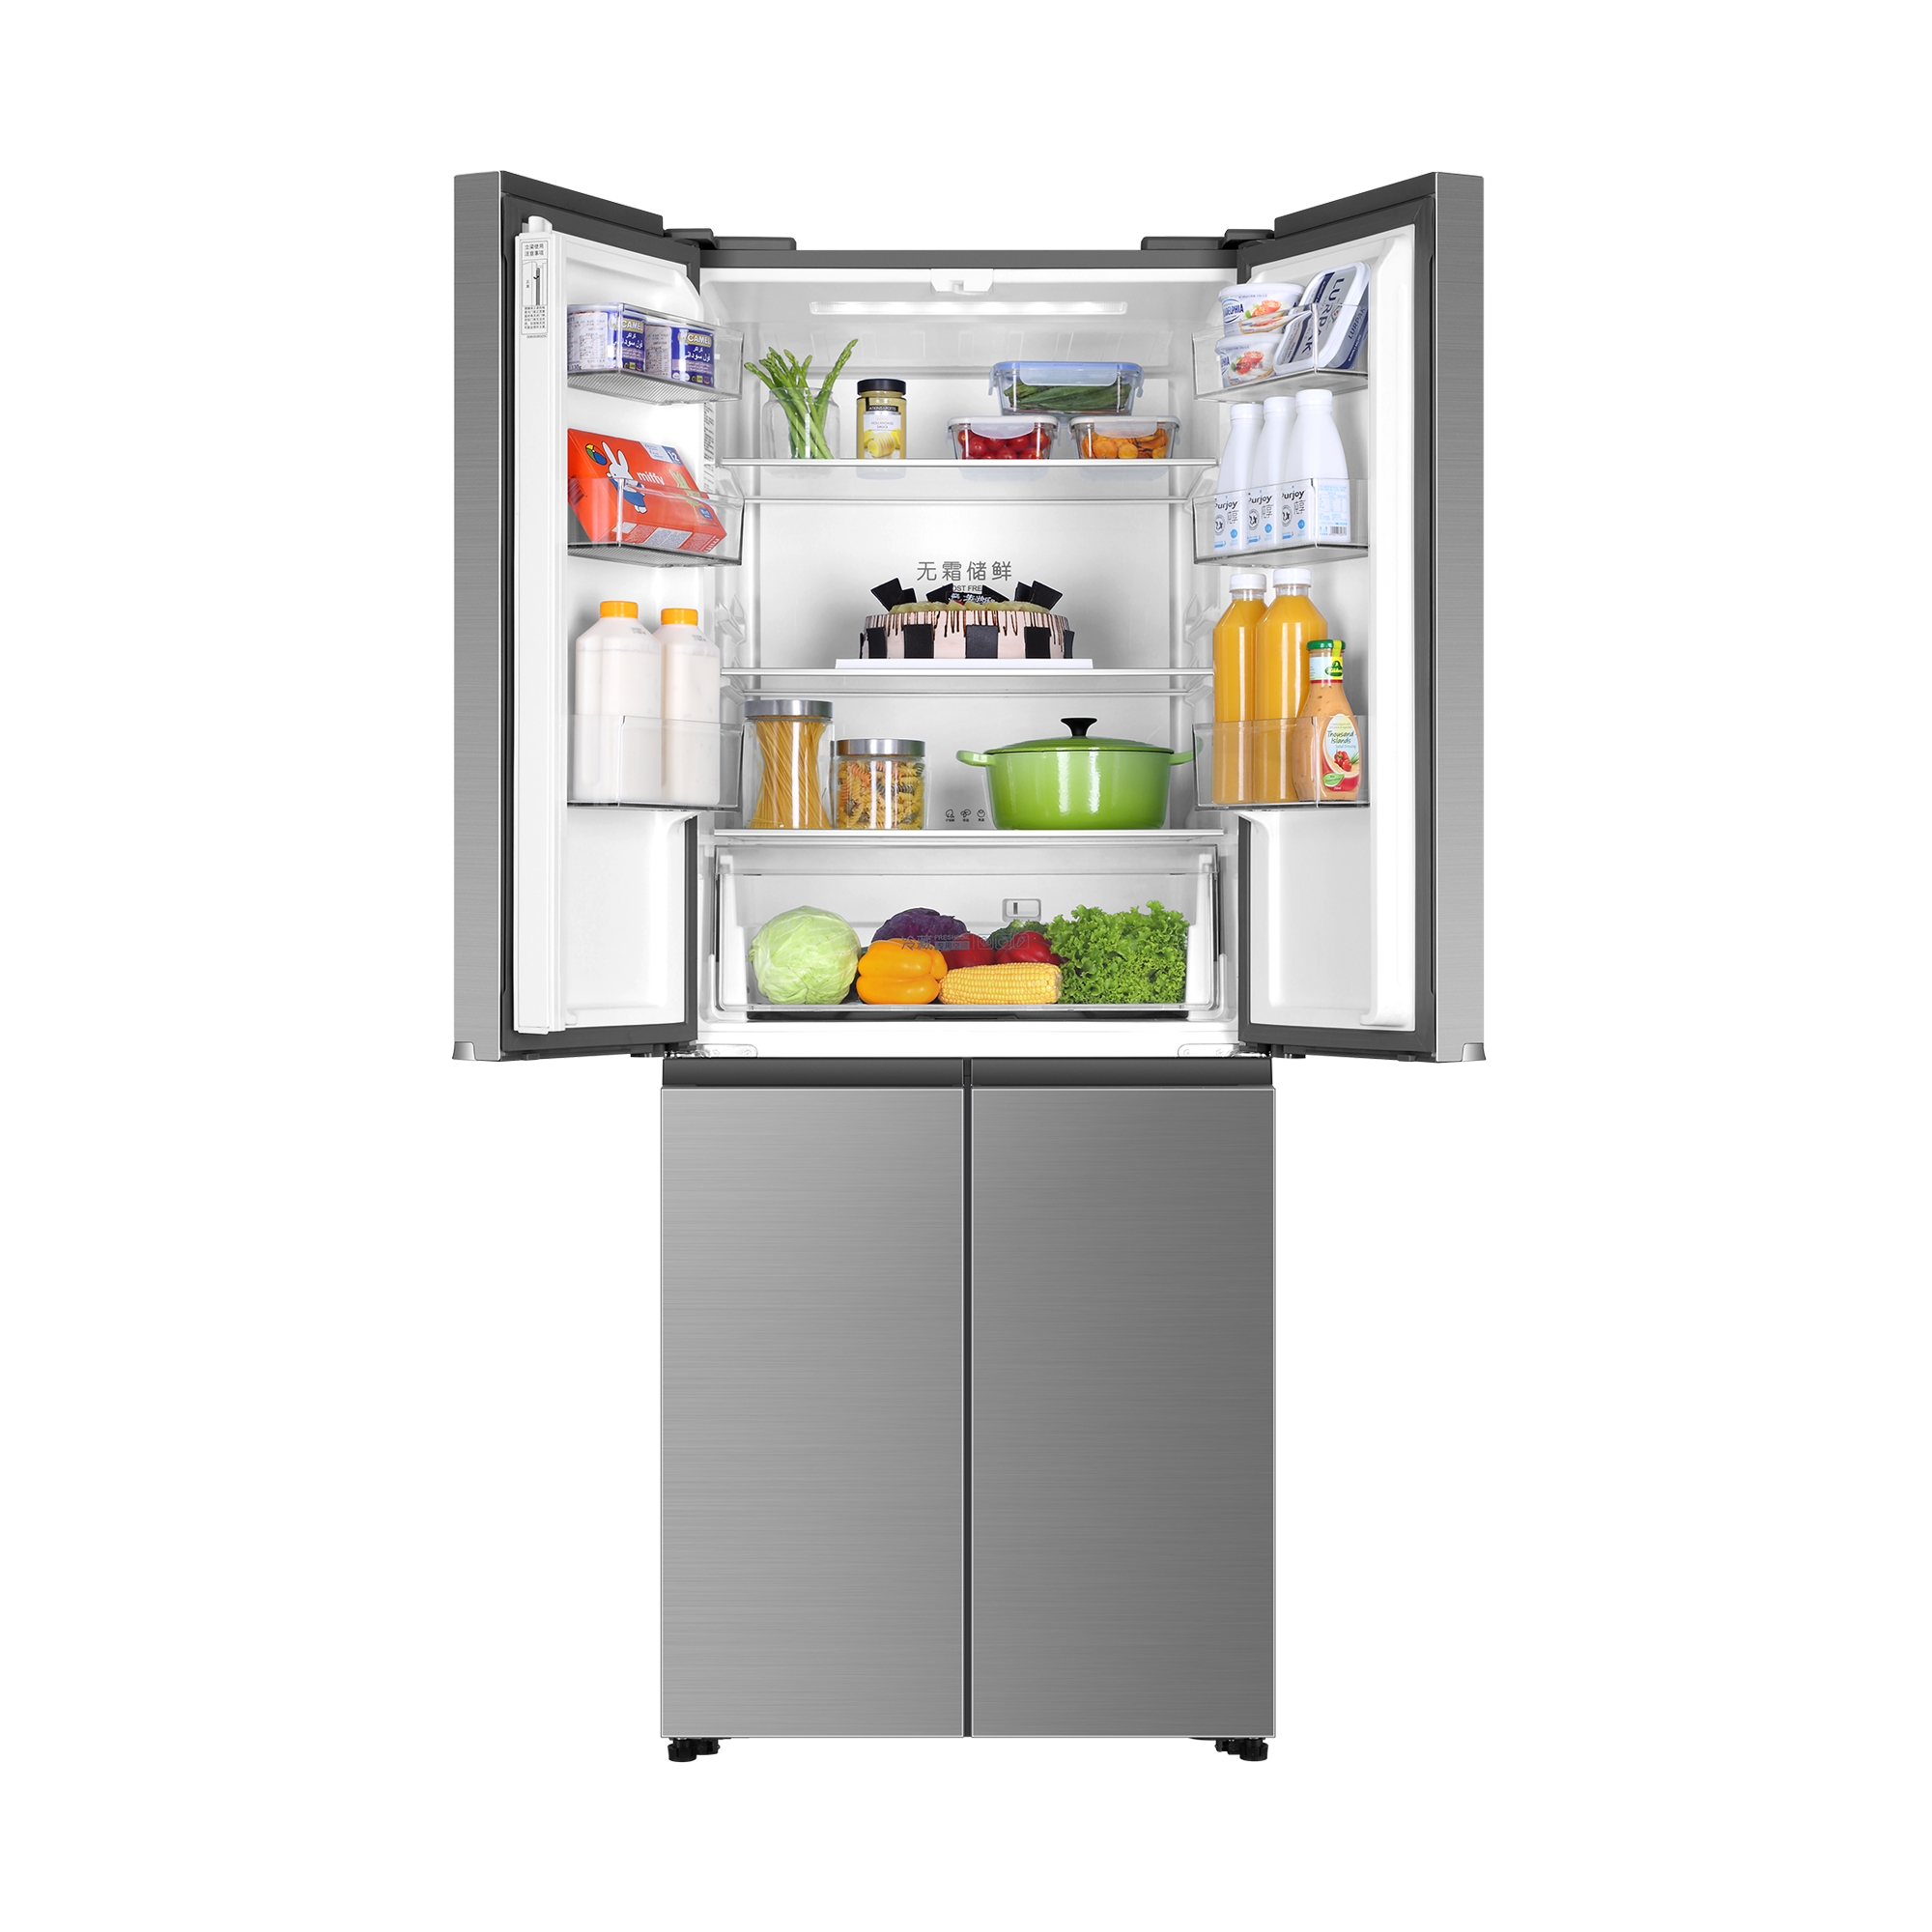 一个人的精彩——单人用冰箱设计 Refrigerator - 普象网